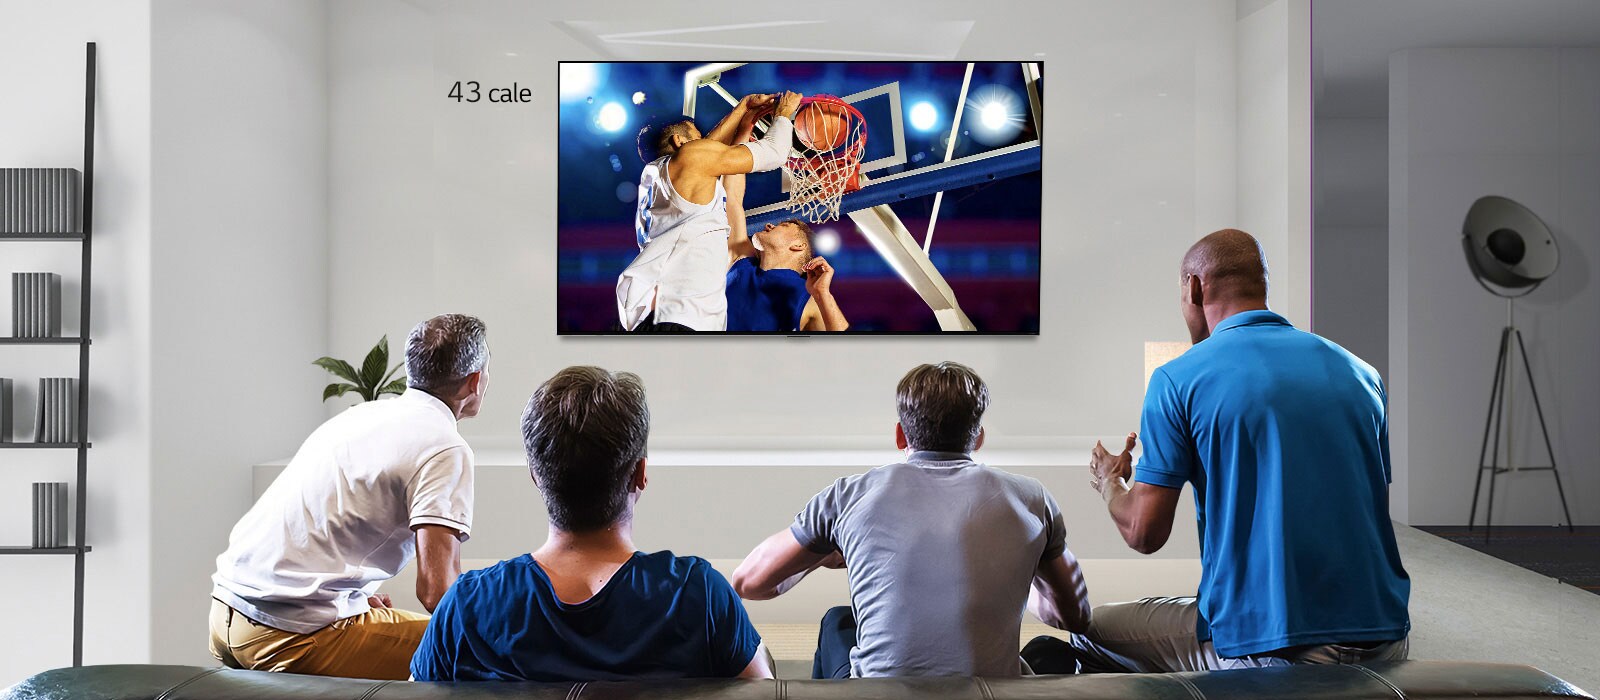 Widok z tyłu wiszącego na ścianie telewizora, na którego ekranie widać toczący się mecz koszykówki oglądany przez czterech mężczyzn. Przewinięcie w prawo odkrywa różnicę w rozmiarze między ekranem o przekątnej 43 i 86 cali.